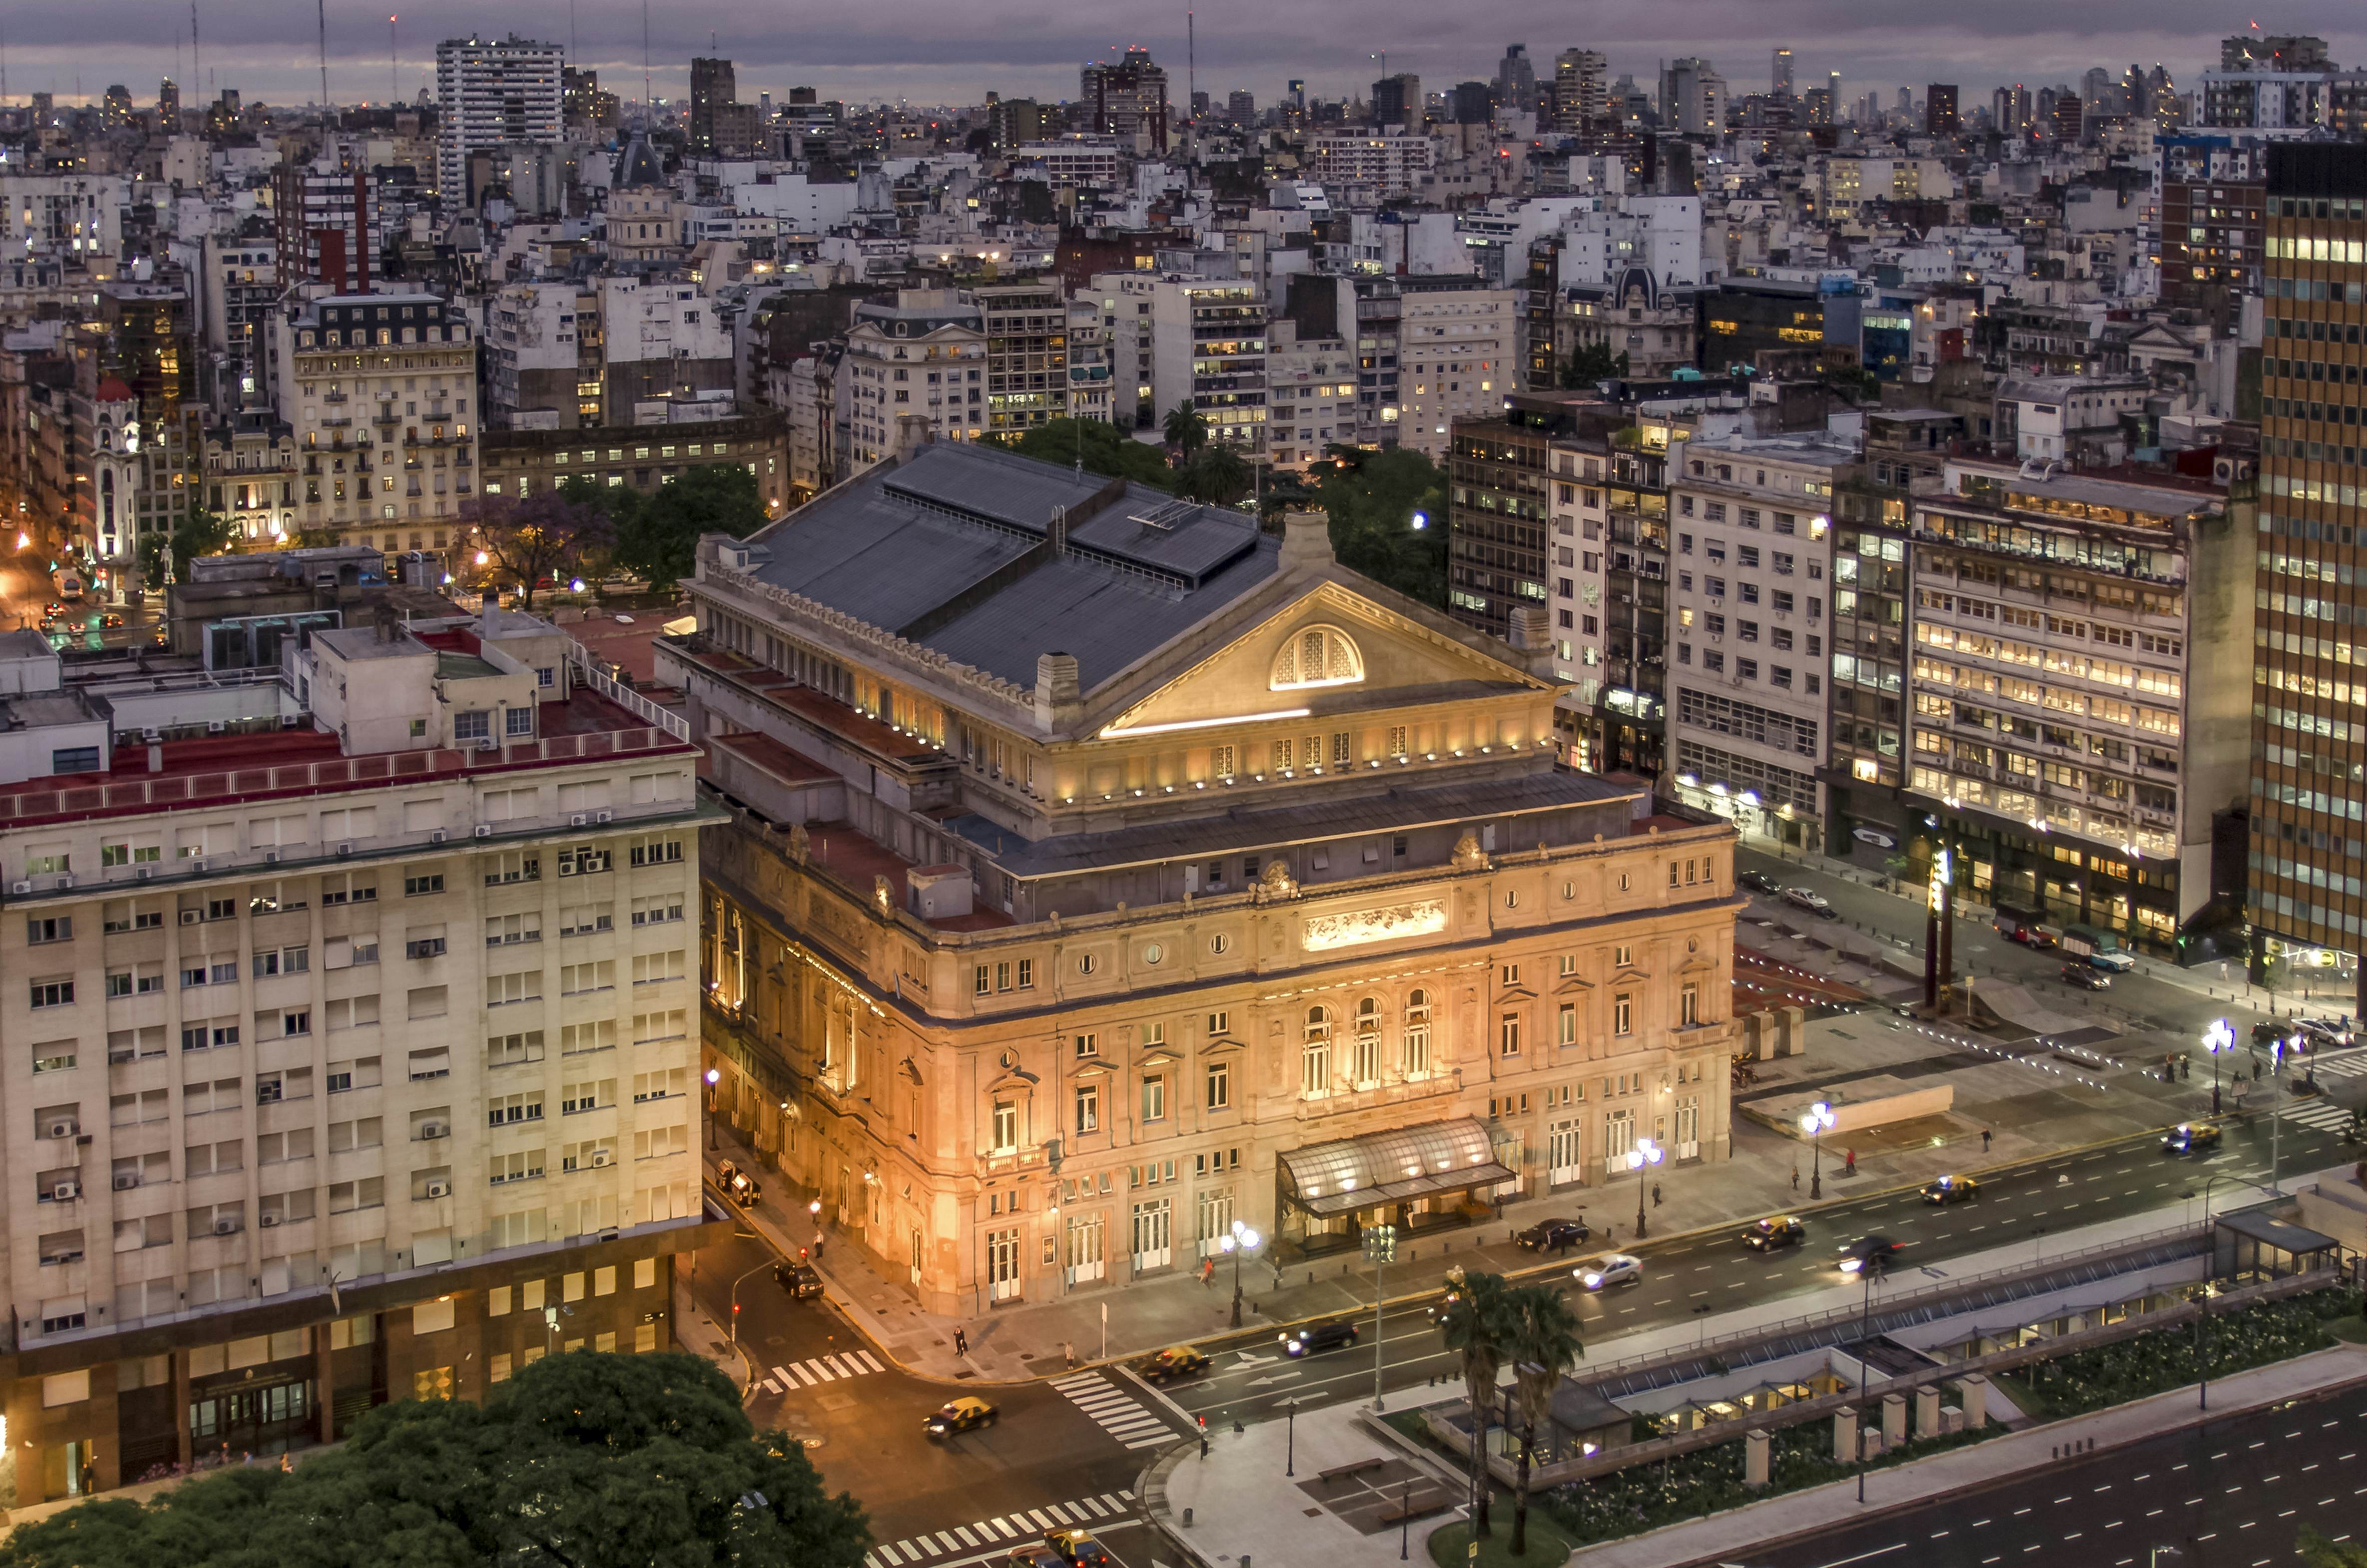 Teatro Colón Buenos Aires, Argentina Attractions Lonely